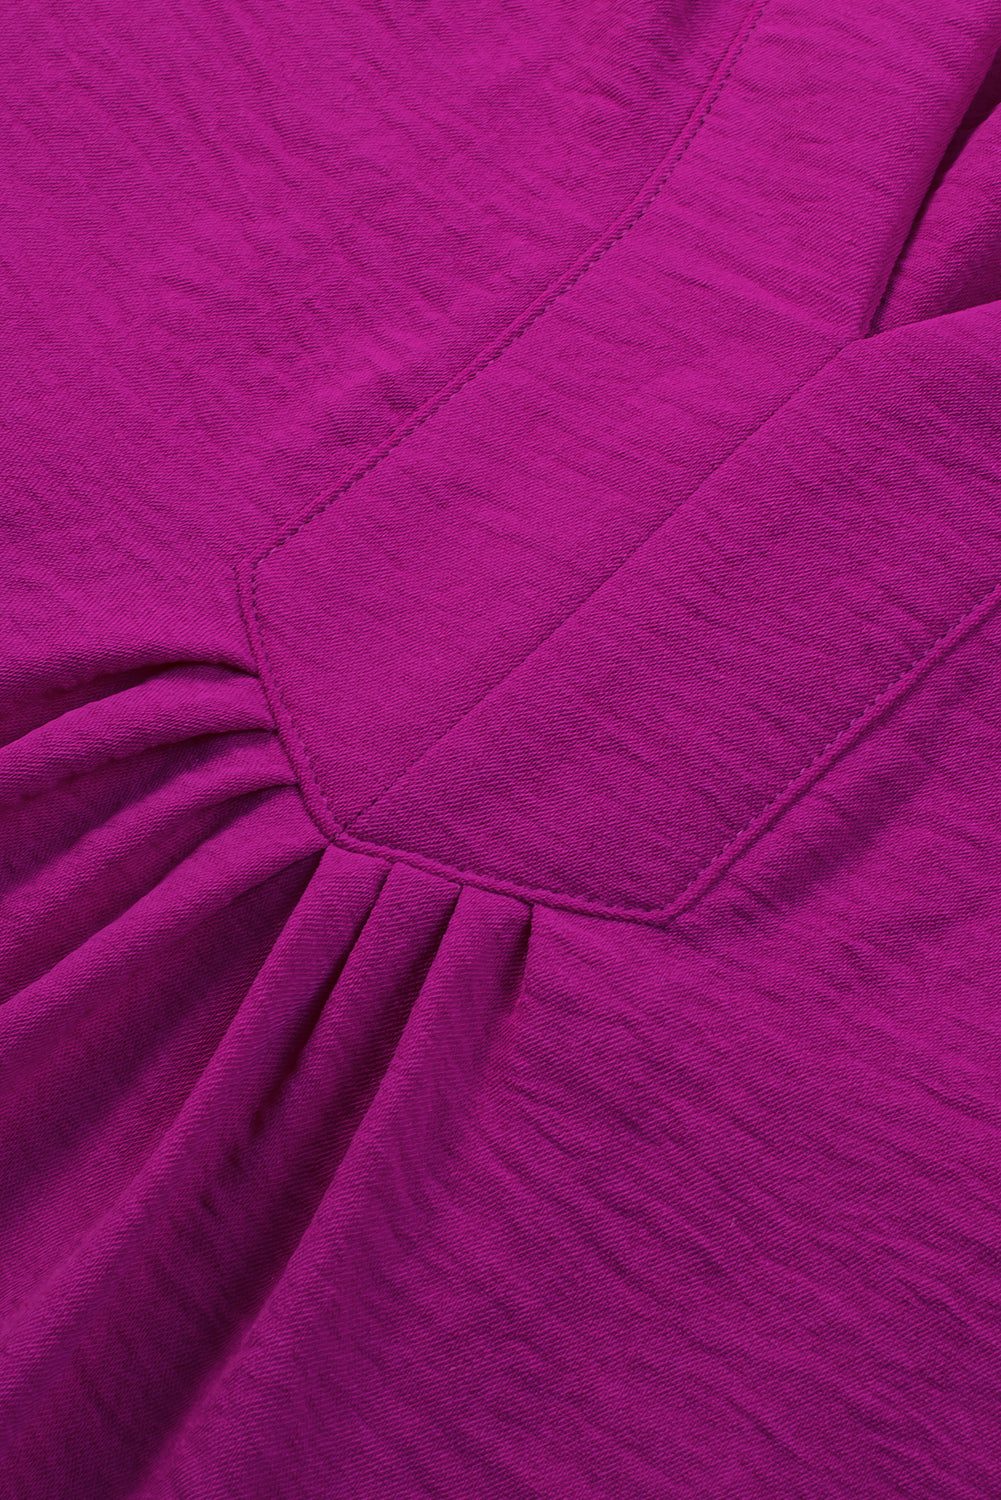 Robe rouge rose plissée à manches larges et col cranté, grande taille